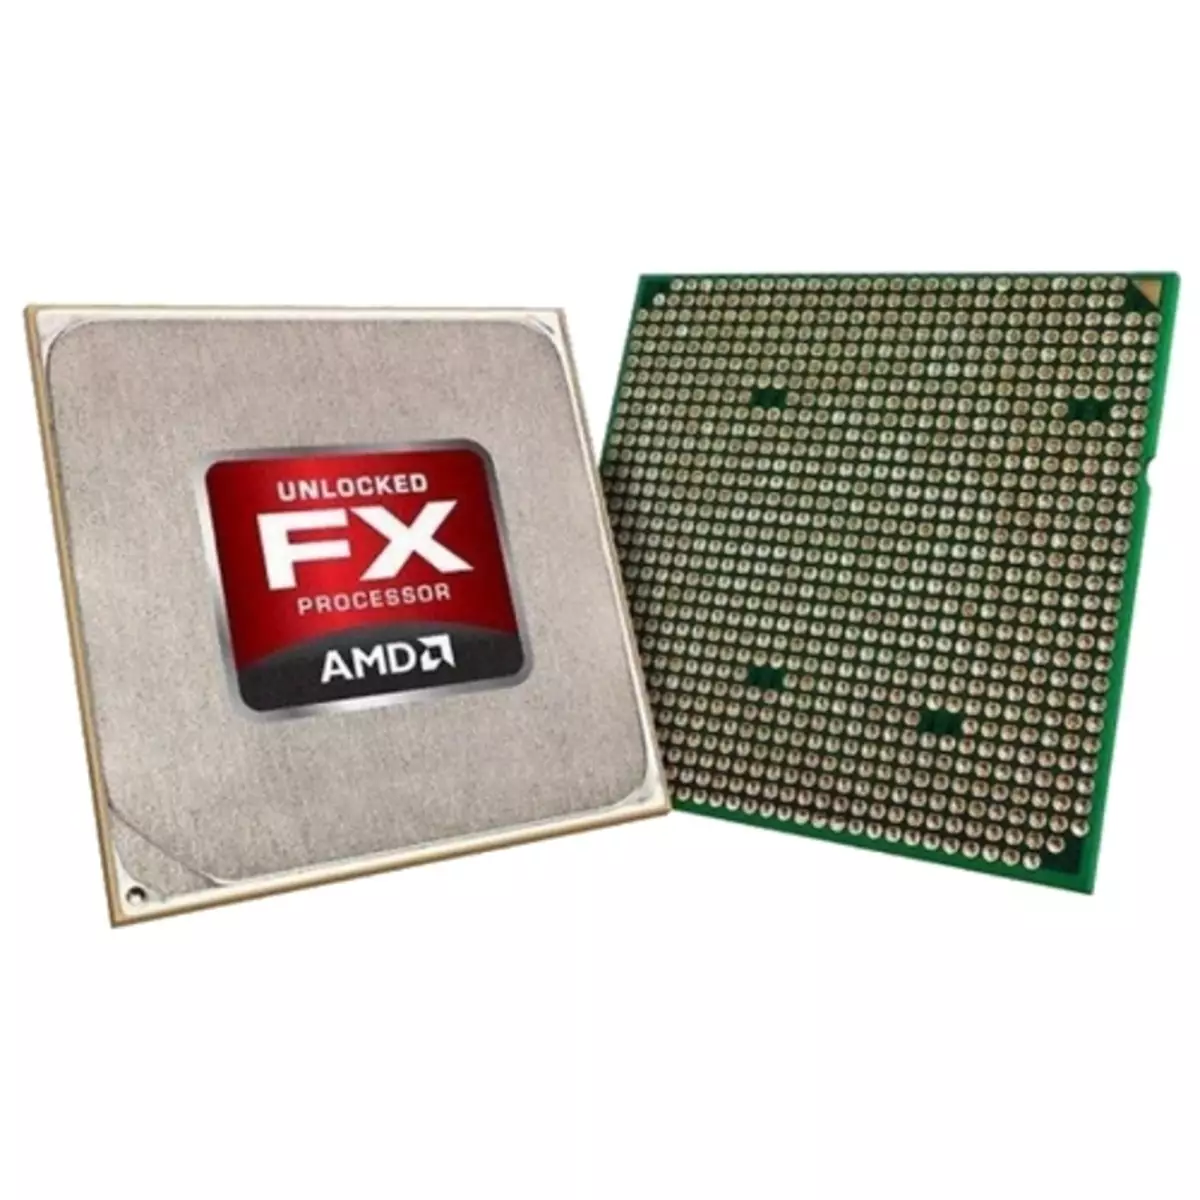 Išorinis AMD FX procesorius